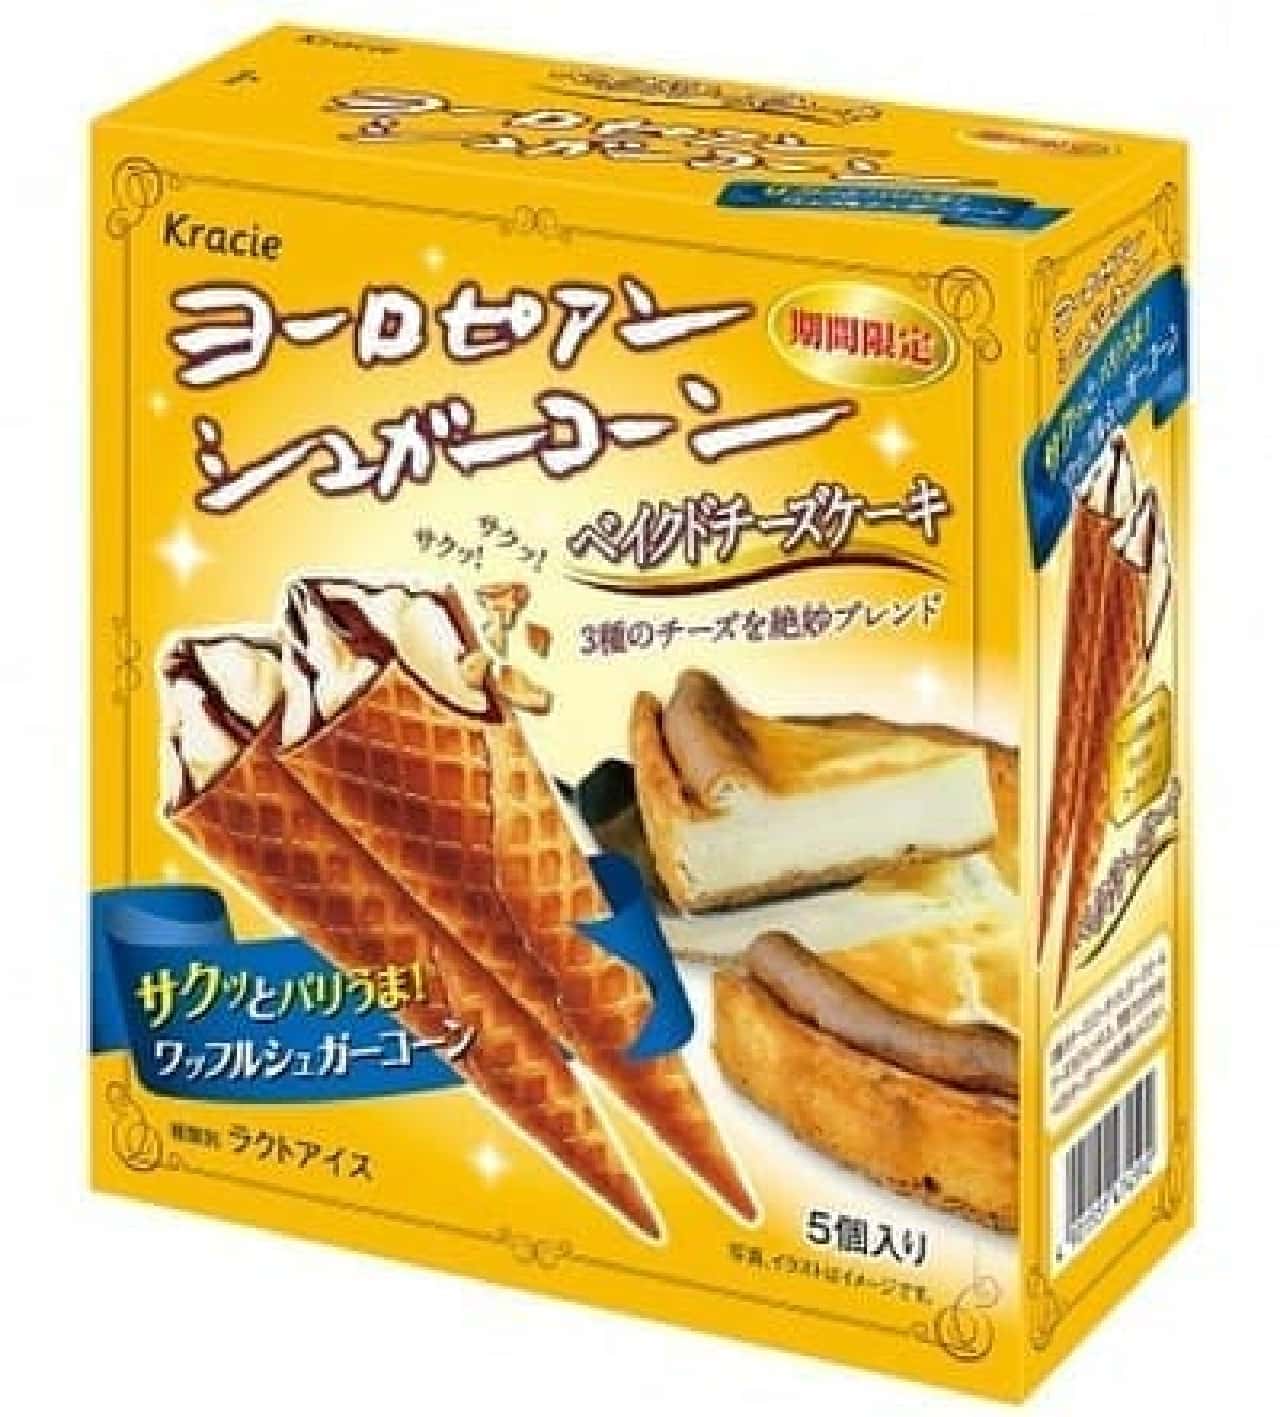 Kracie Foods "European Sugar Corn Baked Cheesecake"